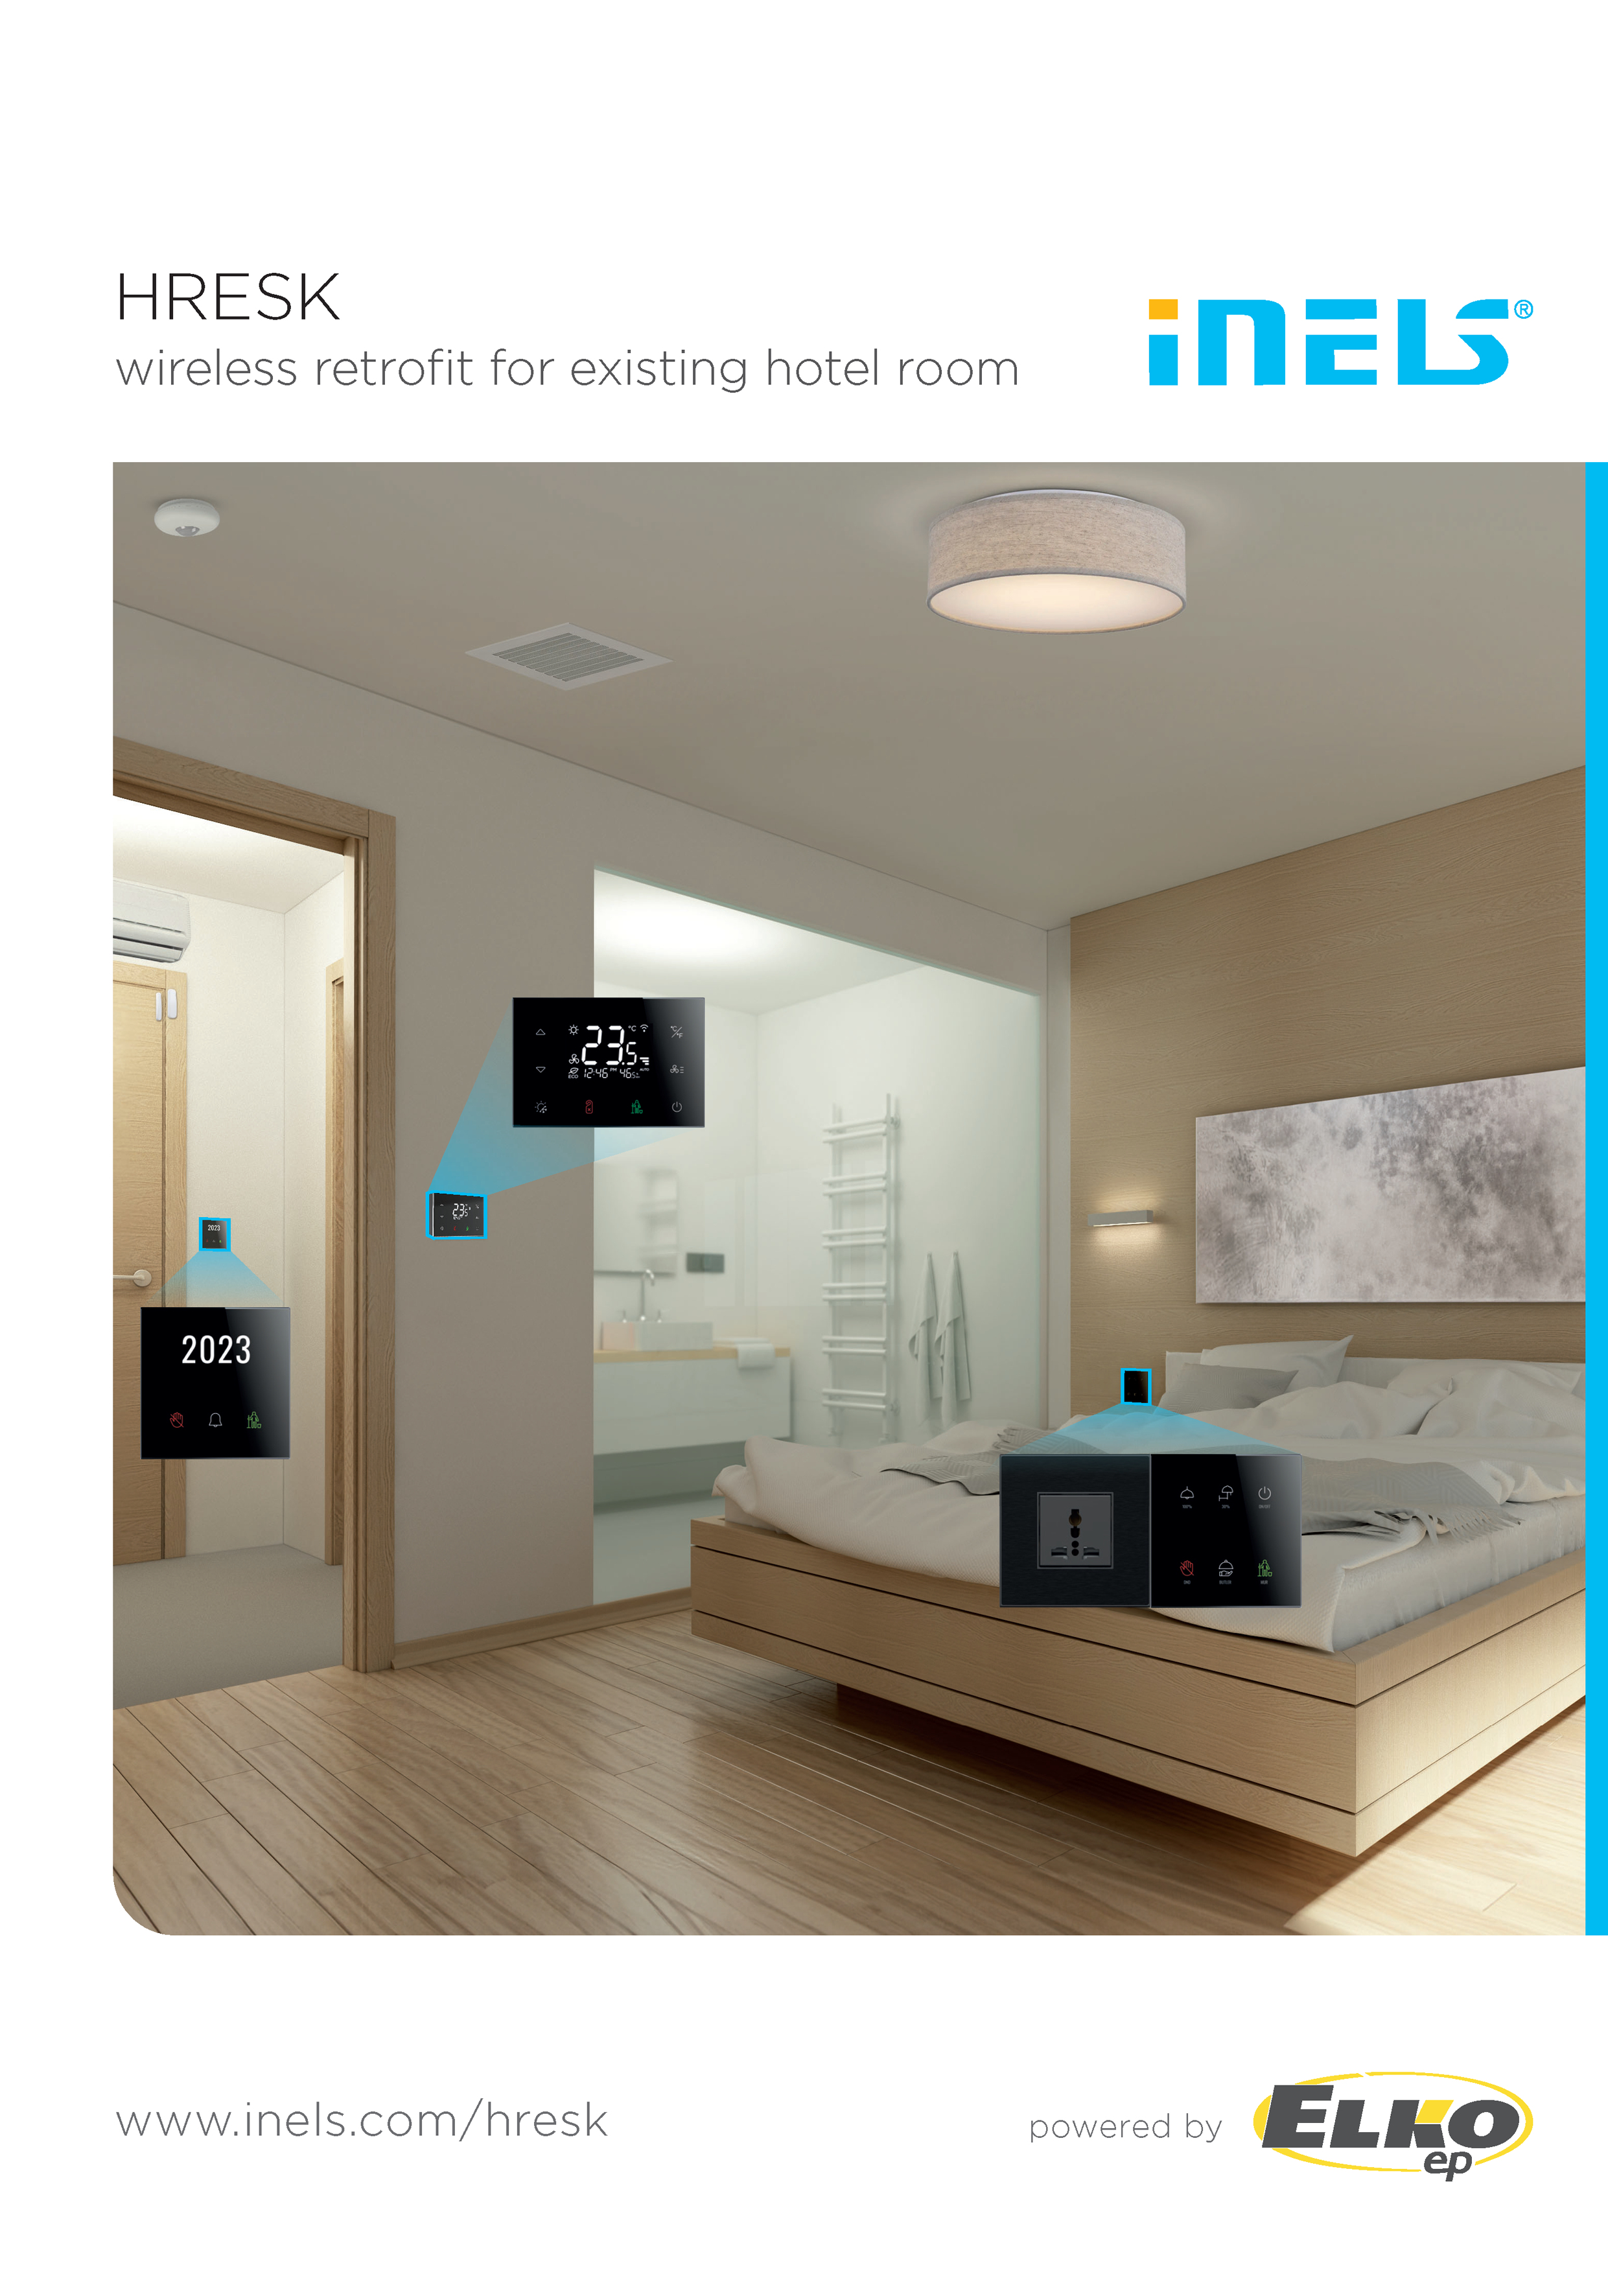 HRESK - Безжично преоборудване за съществуваща хотелска стая 2024 preview